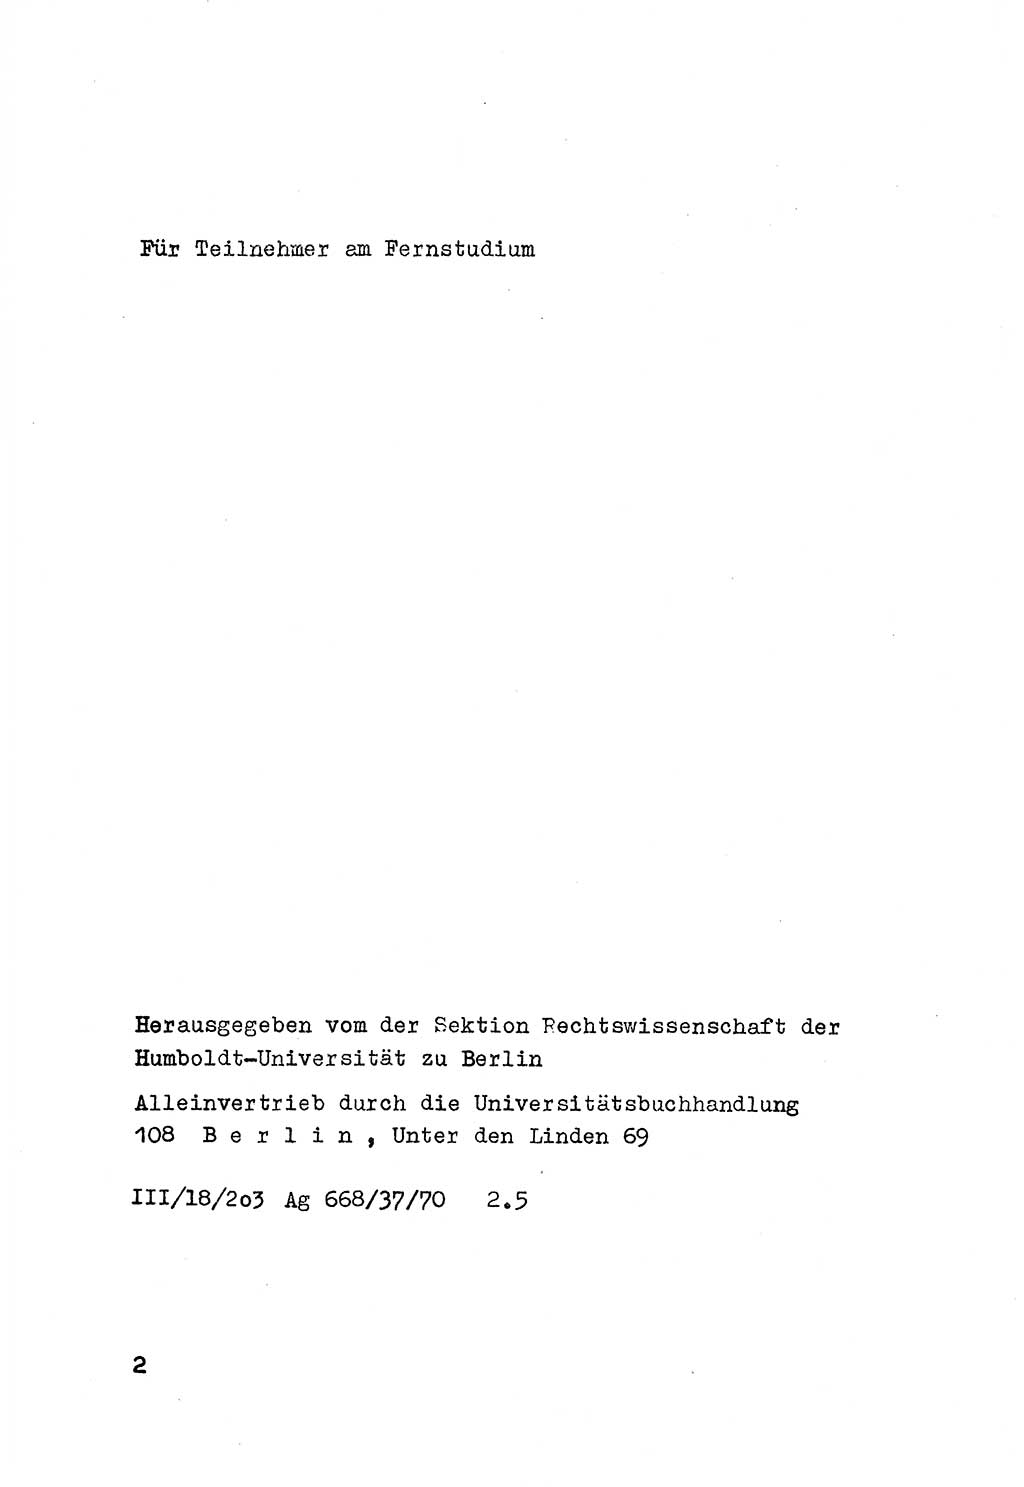 Strafrecht der DDR (Deutsche Demokratische Republik), Besonderer Teil, Lehrmaterial, Heft 6 1970, Seite 2 (Strafr. DDR BT Lehrmat. H. 6 1970, S. 2)